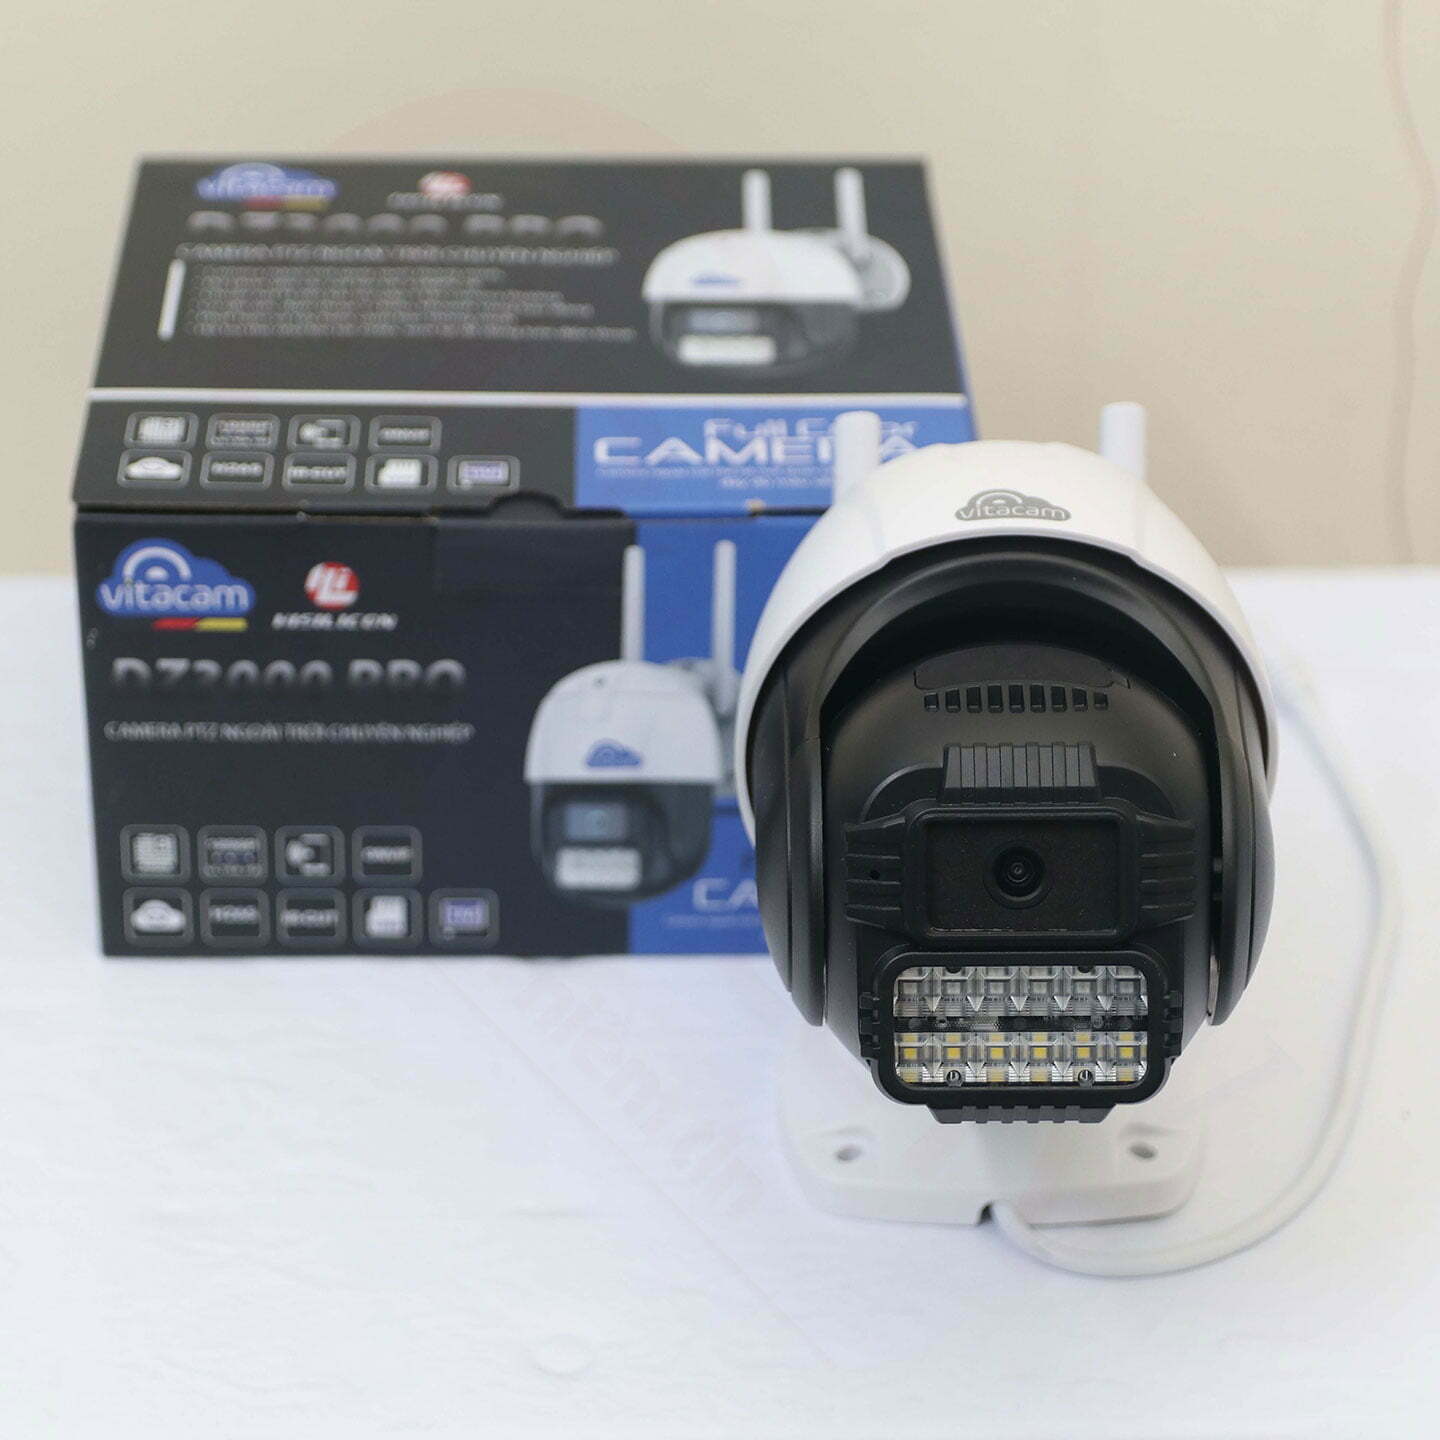 Vitacam DZ3000 Pro - Camera IP Speed Dome PTZ 3MP (1296P) - HDnew CCTV